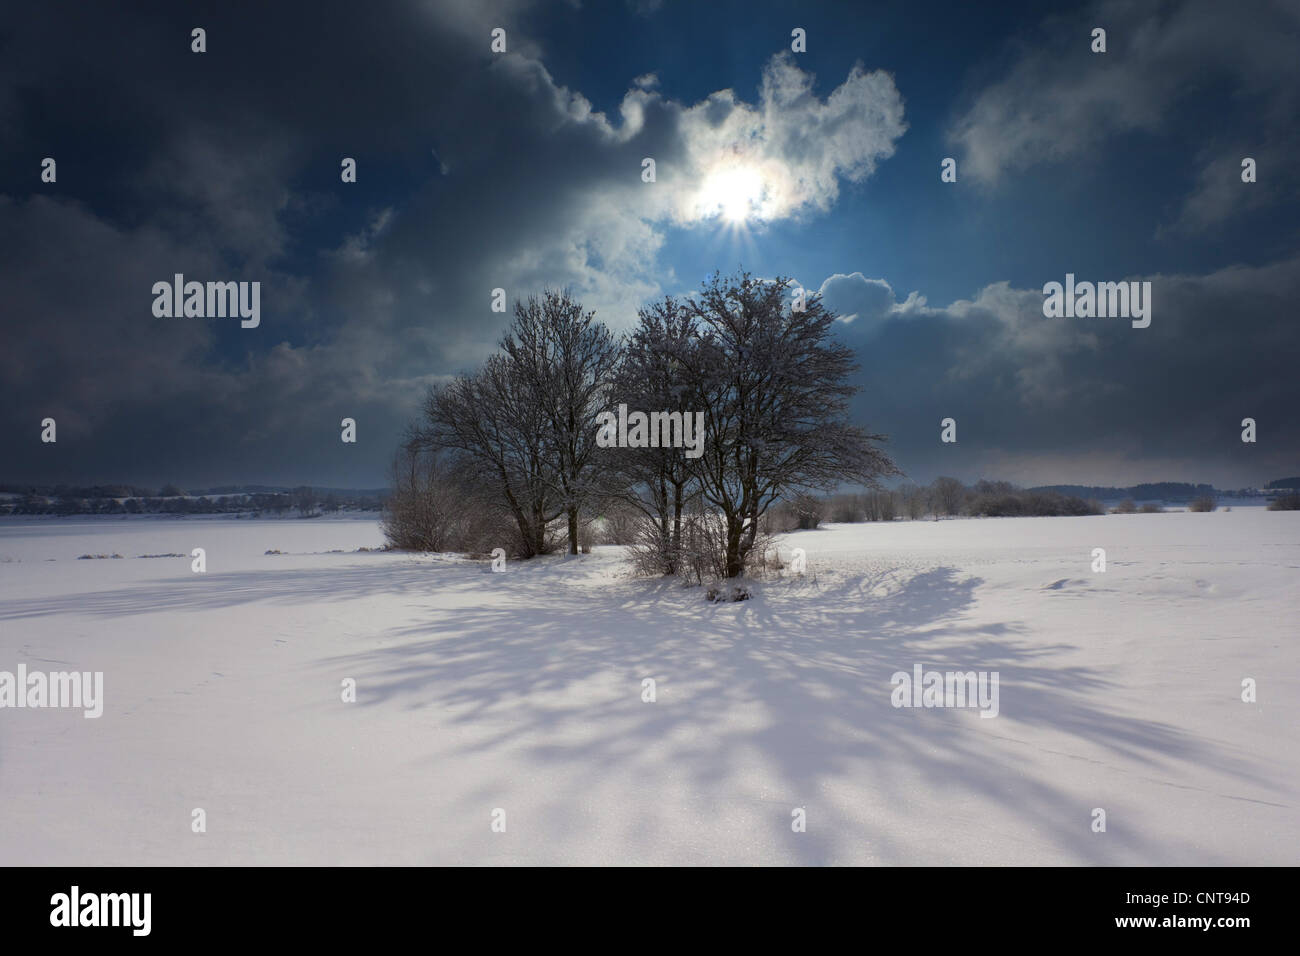 Sombras en la nieve. Pintoresco paisaje de invierno con sol y un grupo de árboles arrojando una larga sombra sobre la nieve, Alemania, Sajonia, Vogtlaendische Schweiz Foto de stock